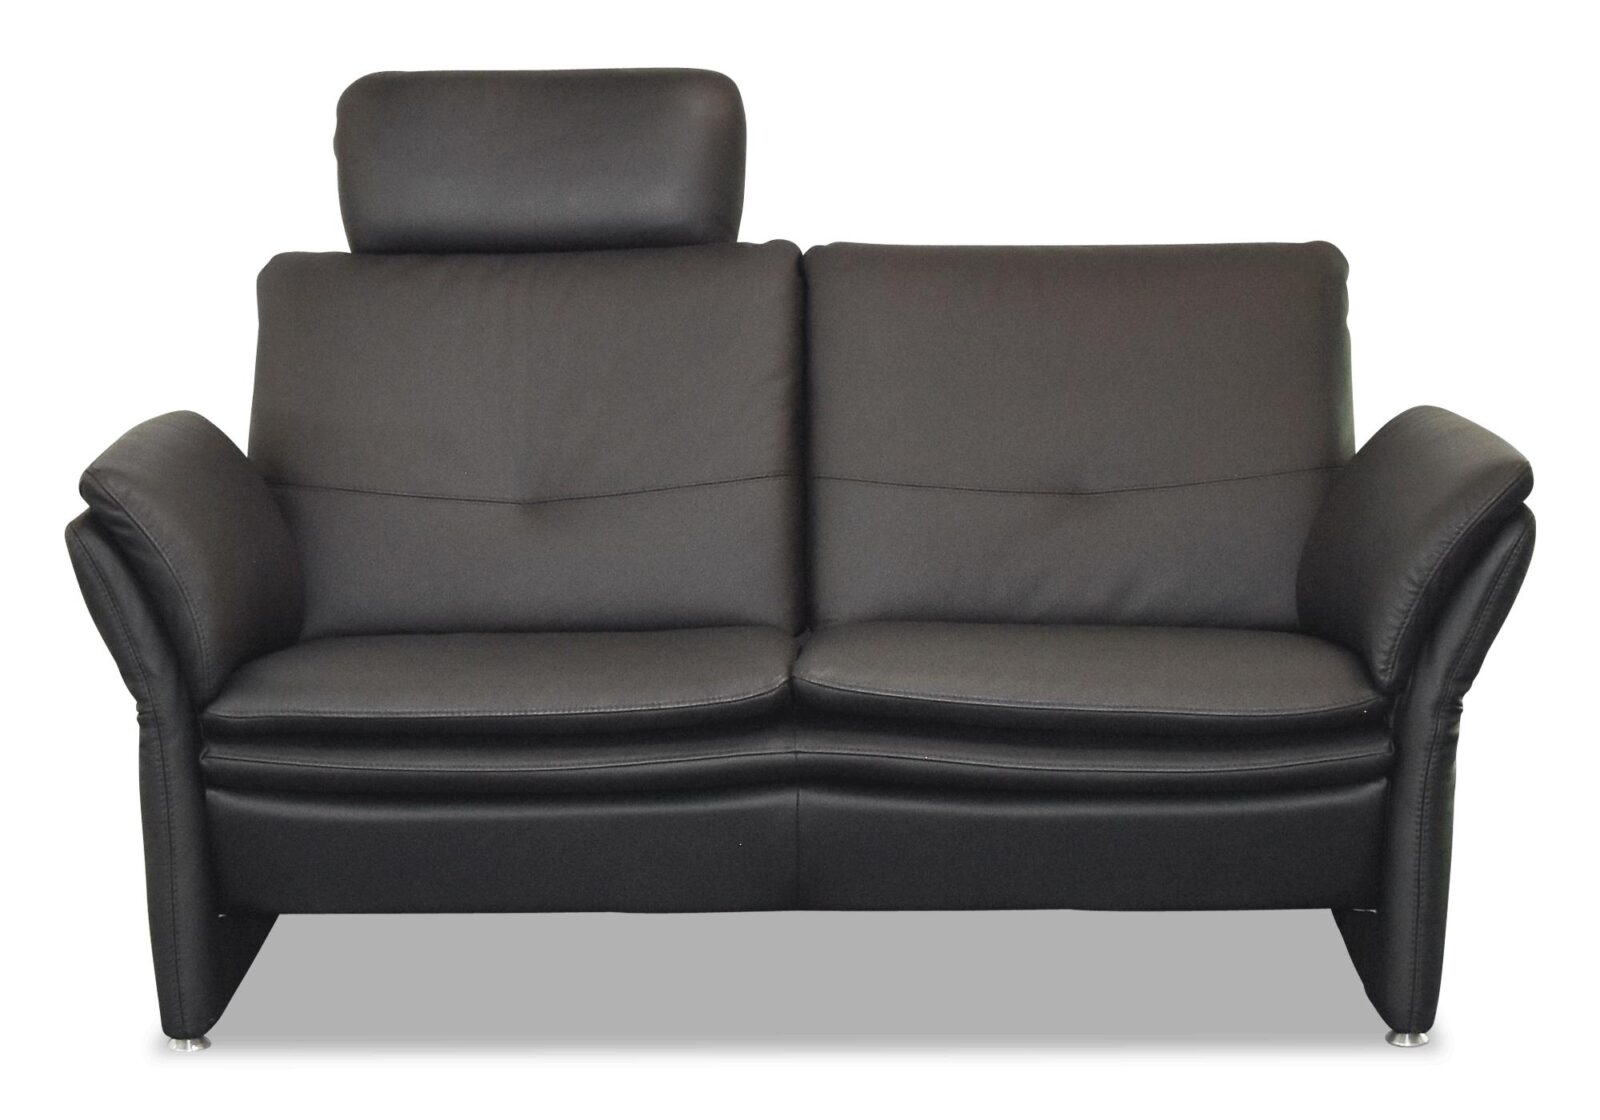 Sofa Florenz mit verstellbaren Armlehnen. Bezug: Leder. Farbe: Schwarz. Erhältlich bei Möbel Gallati.